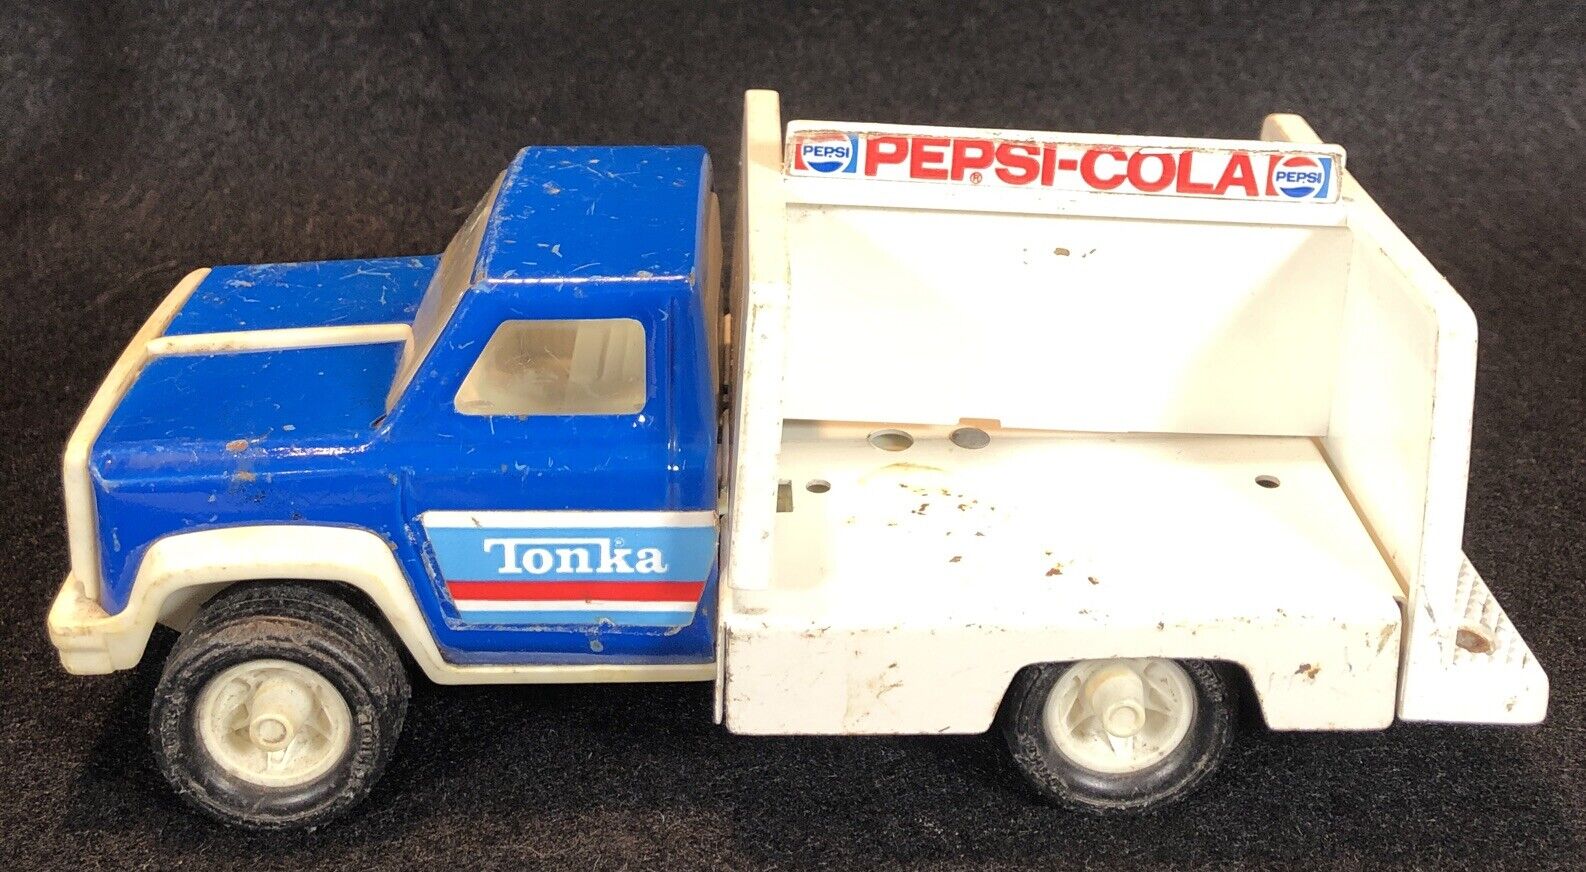 Vintage 1970s Tonka Pepsi-Cola Truck, pressed steel and plastic